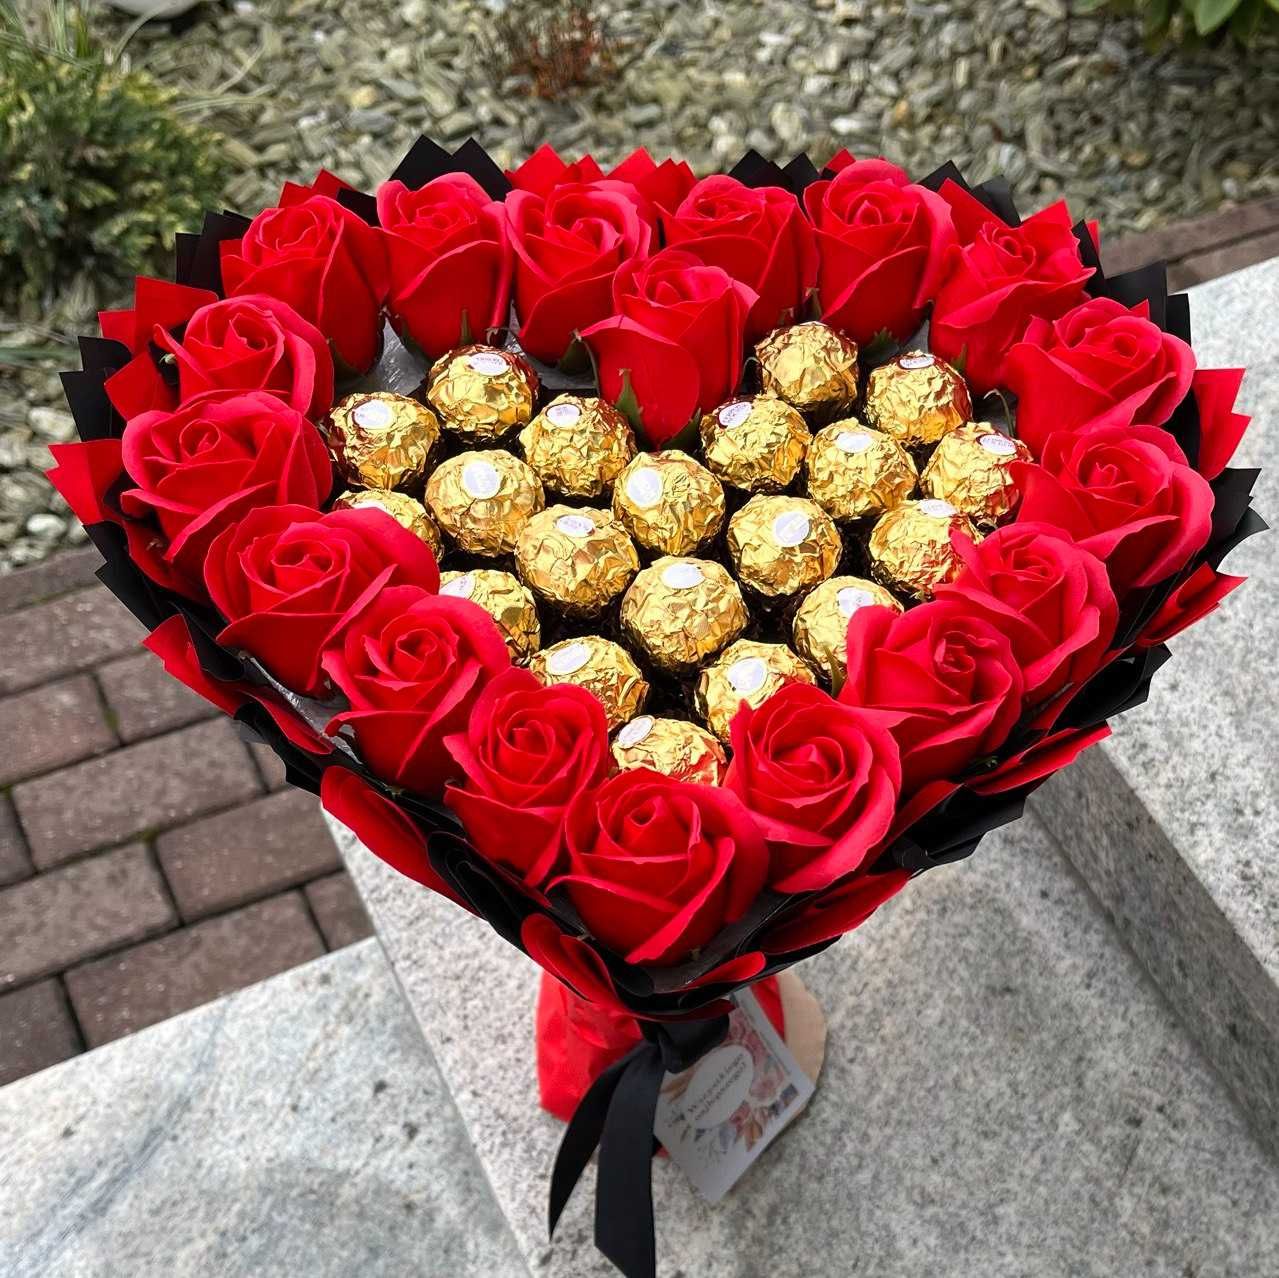 Bukiet 2 serce Ferrero Rocher i 18 szt róż. Prezent na 18 20 urodziny